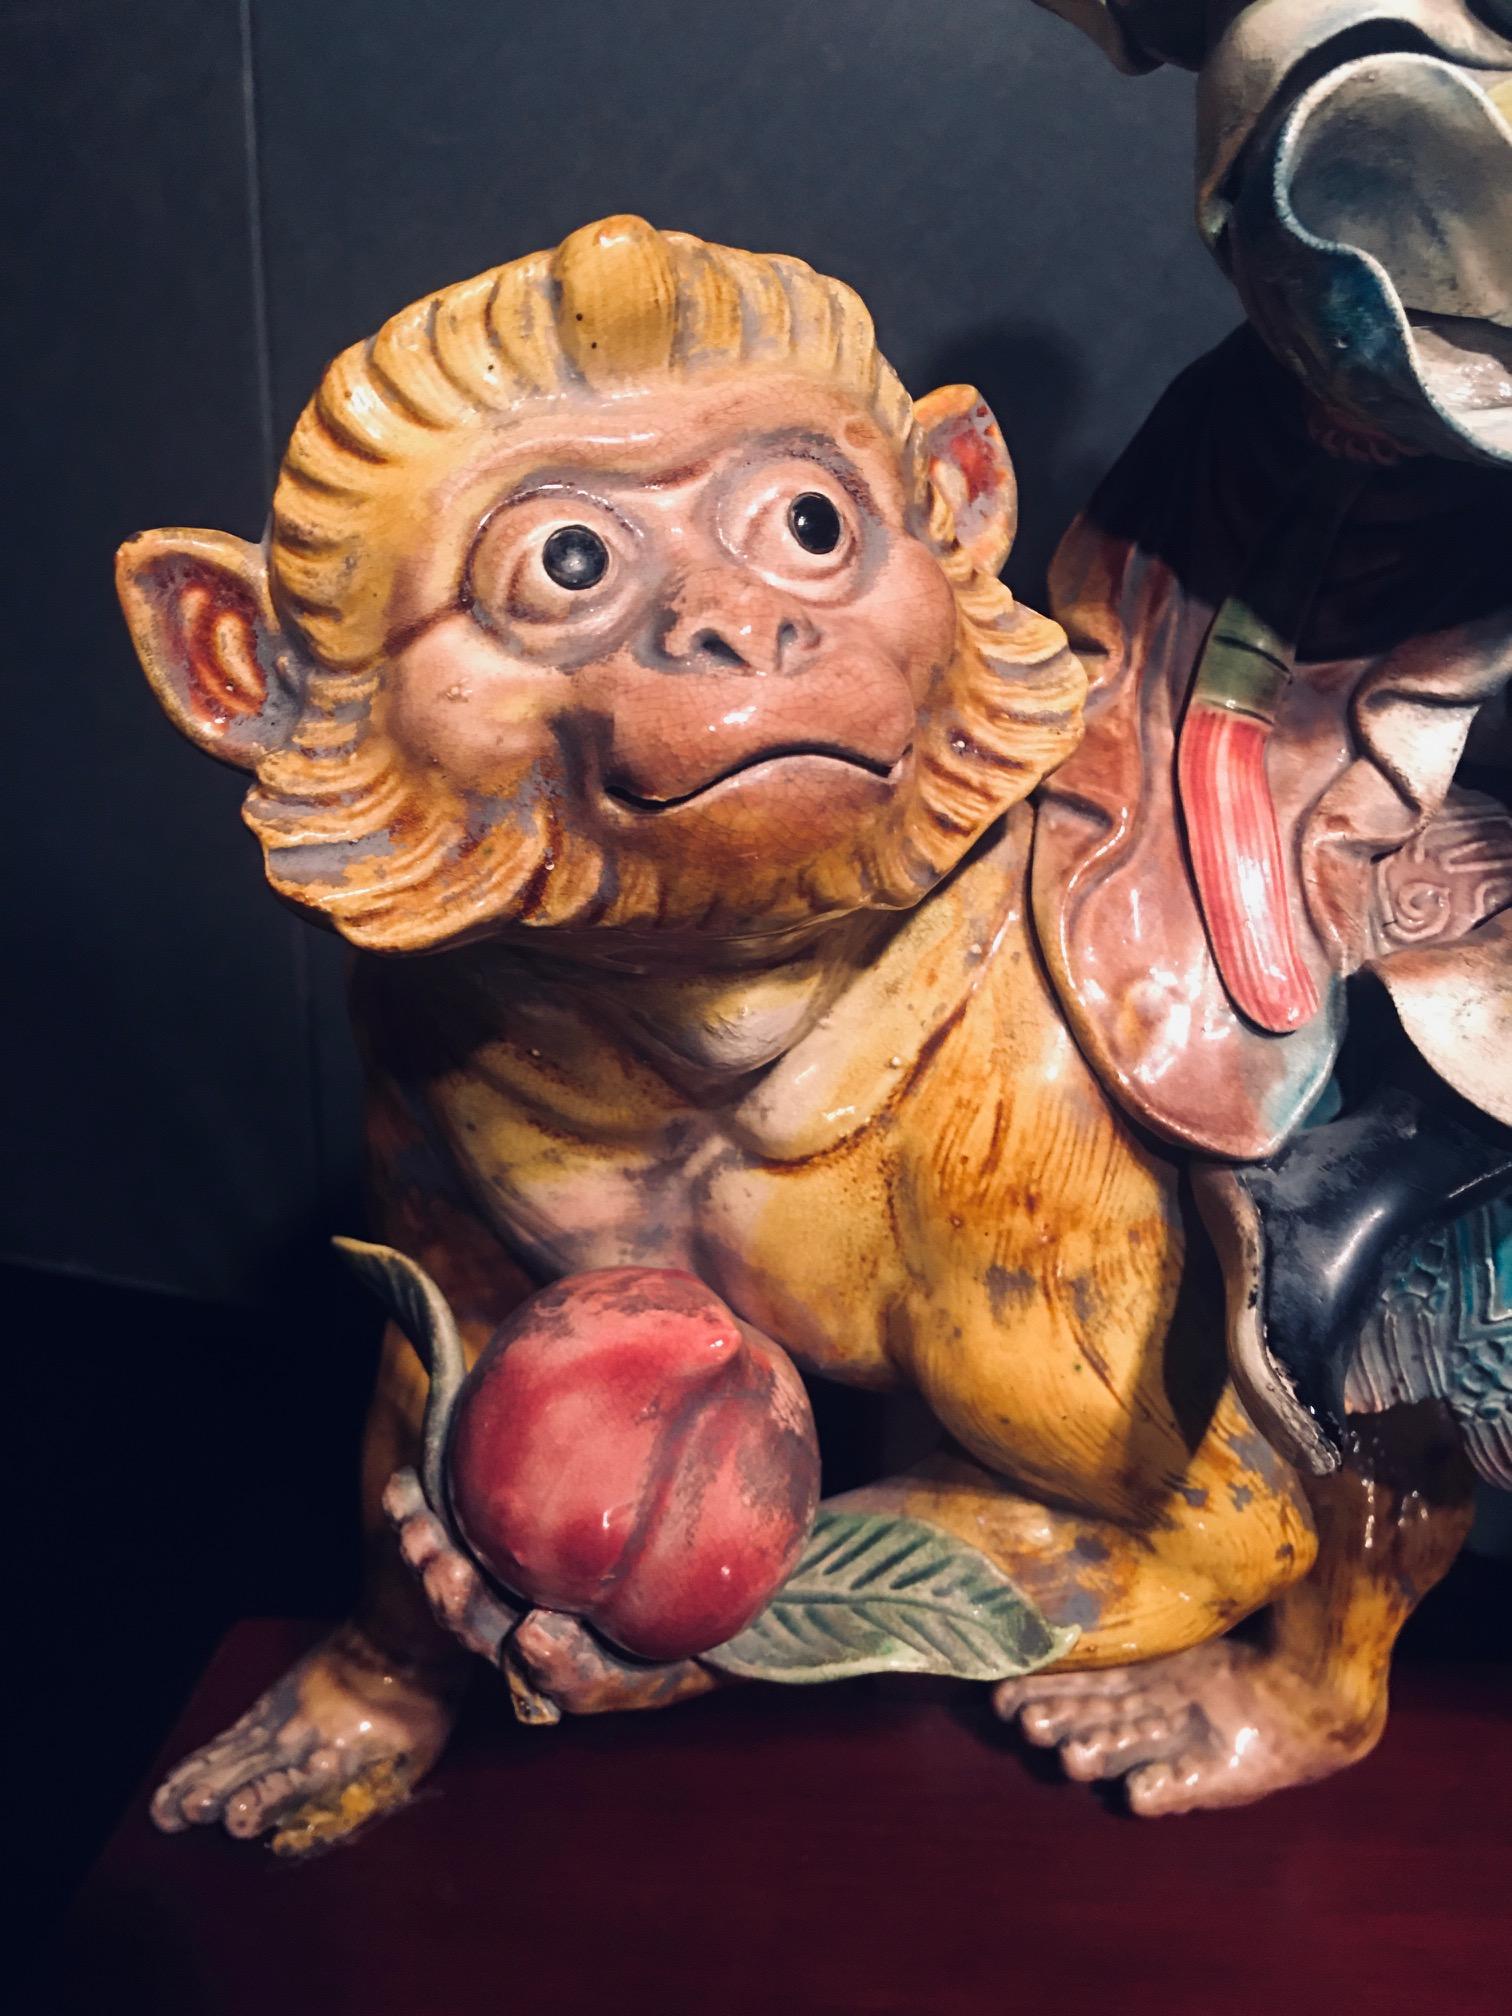 Tuile en porcelaine émaillée chinoise représentant un guerrier chevauchant un singe. La fabrication des carreaux vernissés a été normalisée sous la dynastie Ming et, de la dynastie Qing à l'ère républicaine, les carreaux vernissés sont devenus de